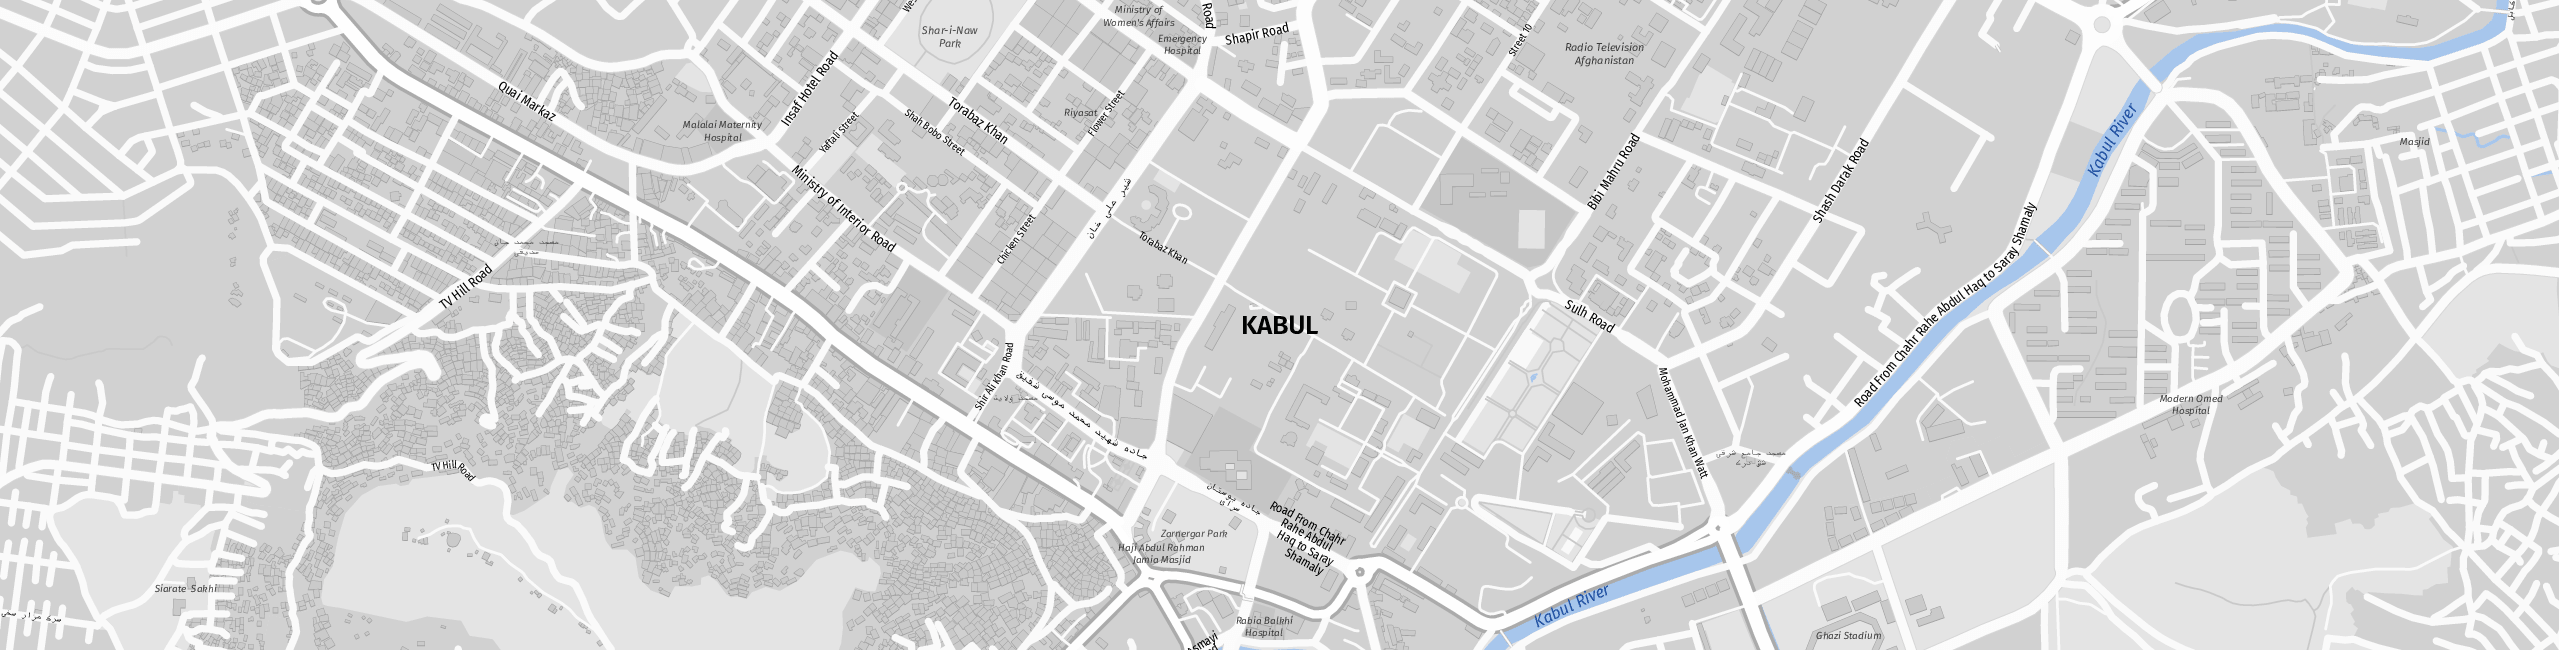 Stadtplan Kabul zum Downloaden.